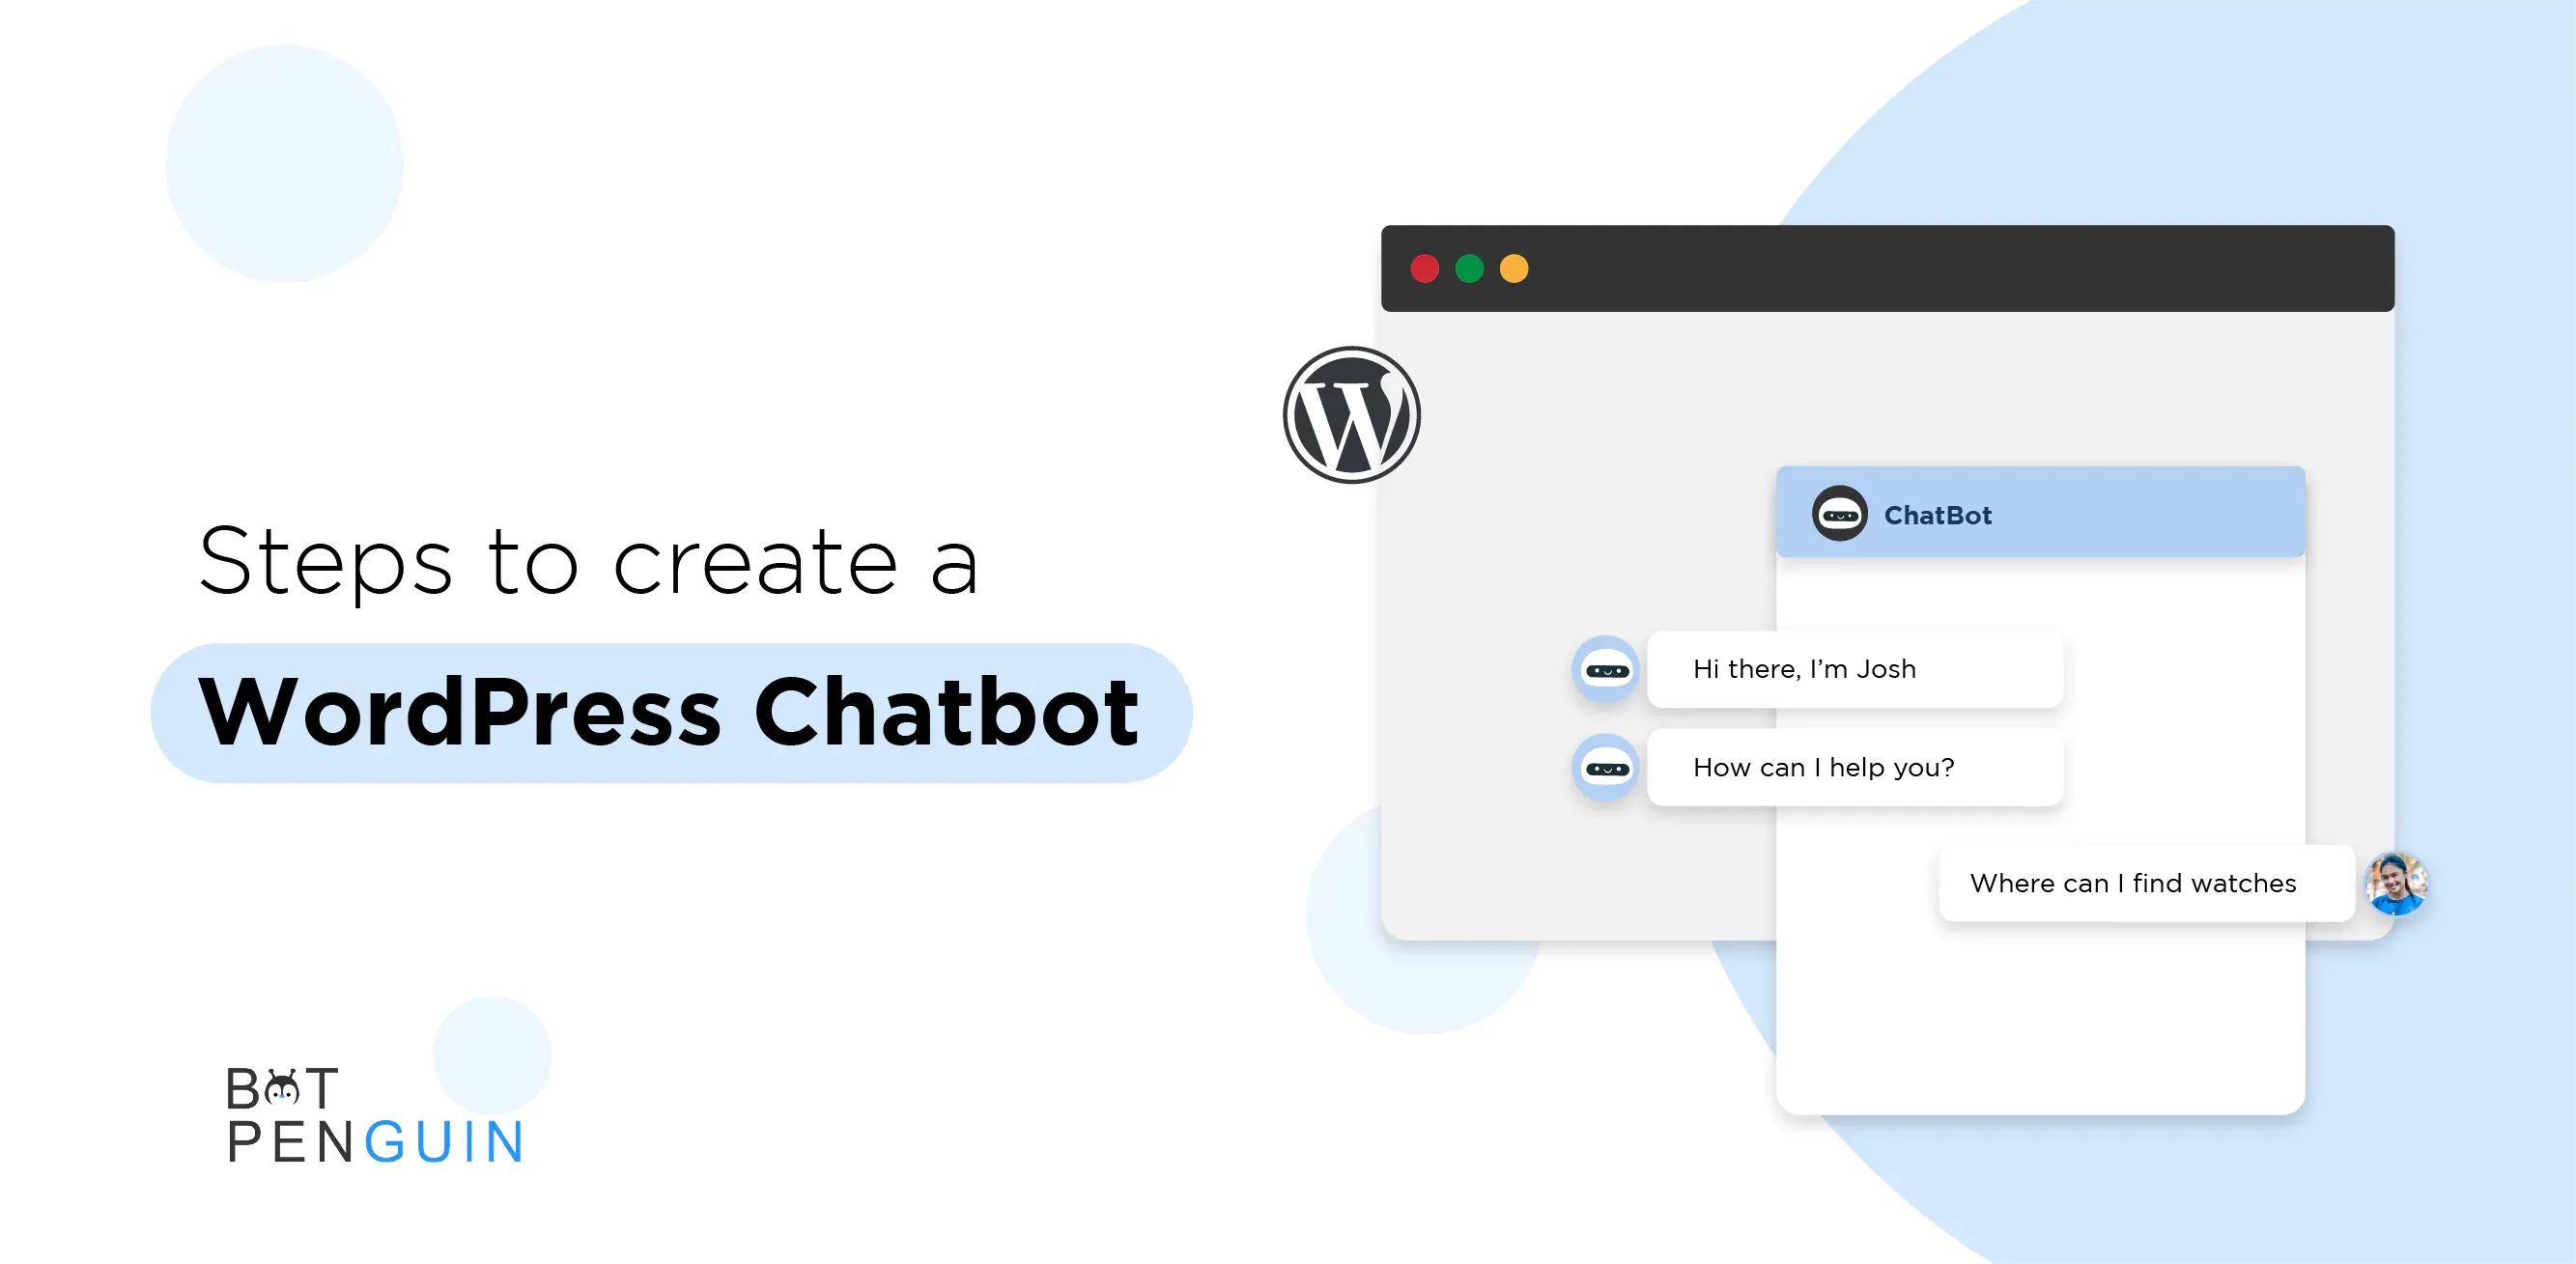 People love BotPenguin Chatbot Maker Platform